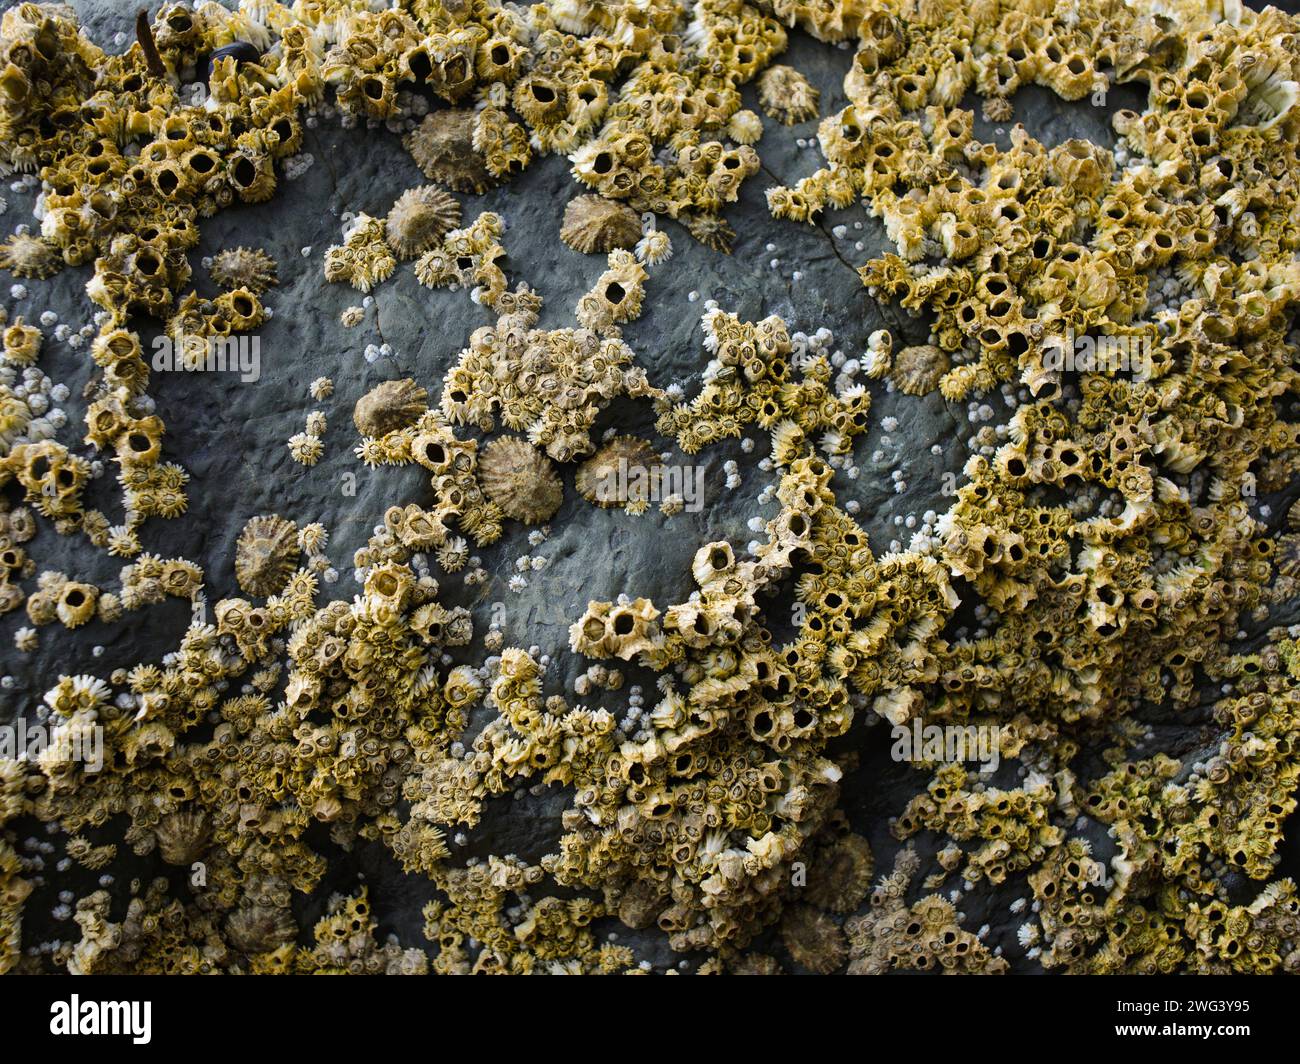 Barnacles on coastal rocks Stock Photo